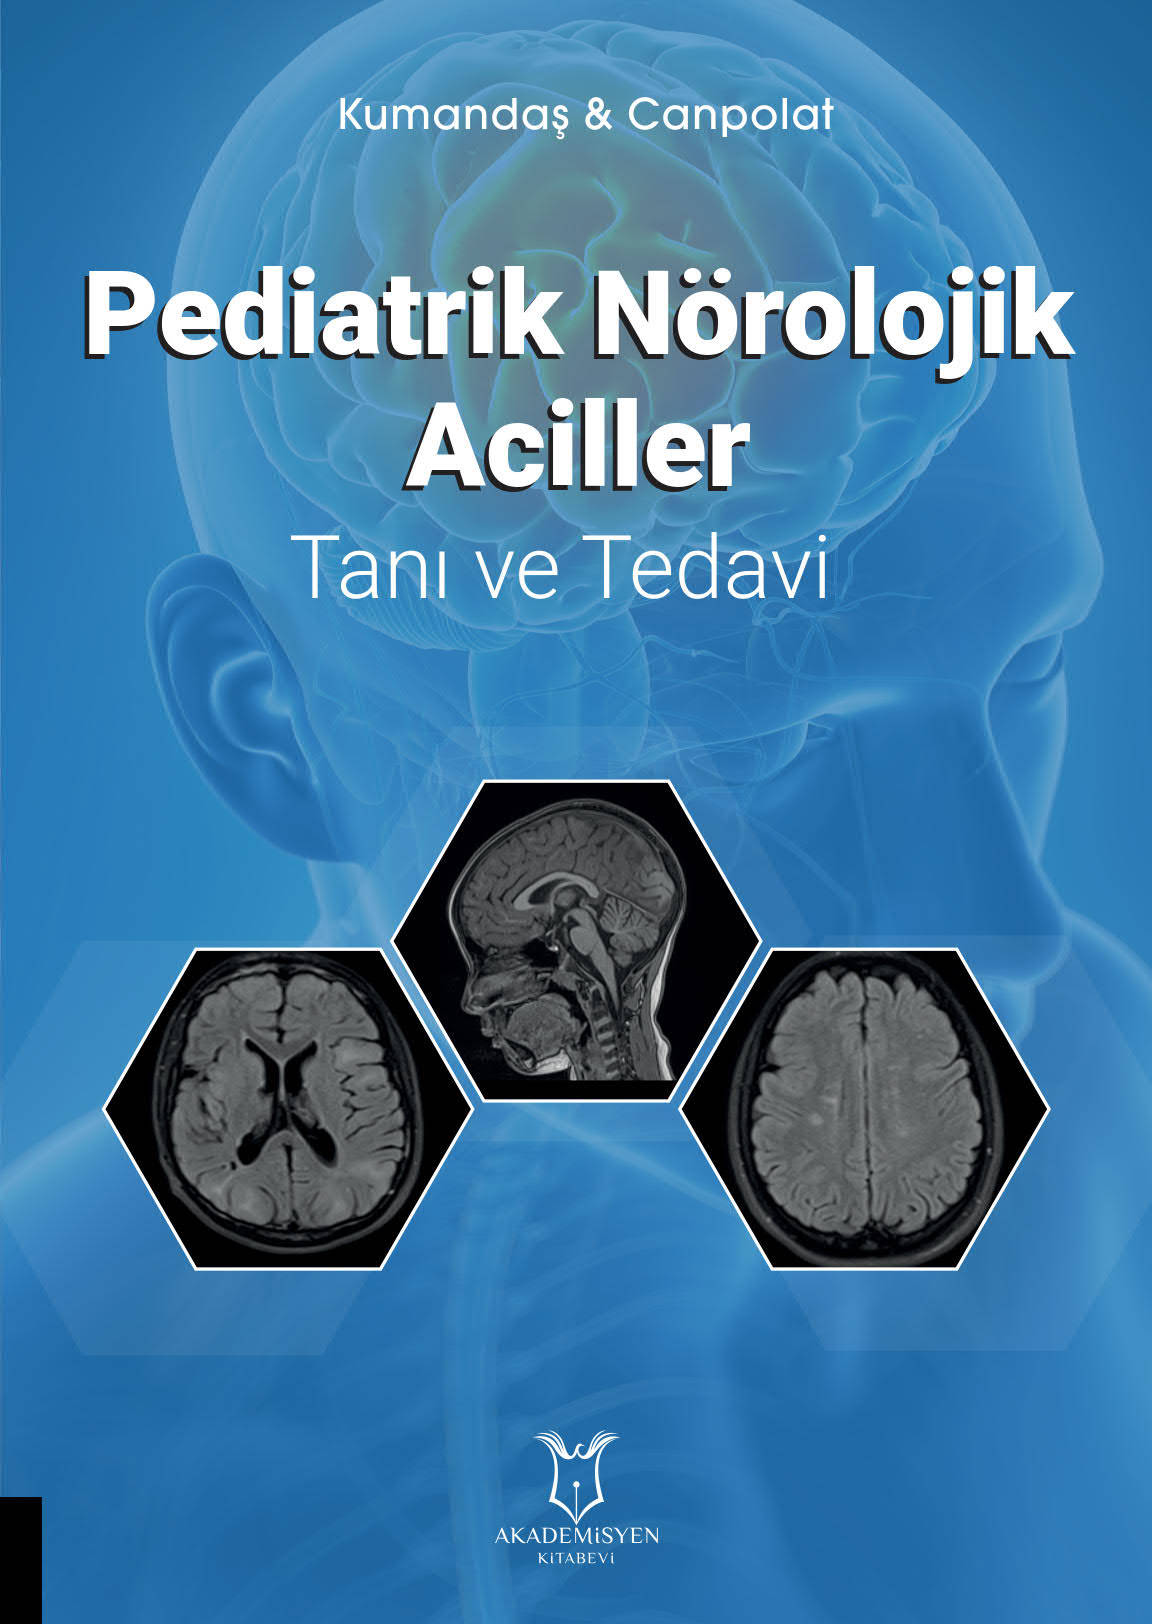 Pediatrik Nörolojik Aciller Tanı ve Tedavi  (Kumandaş & Canpolat)